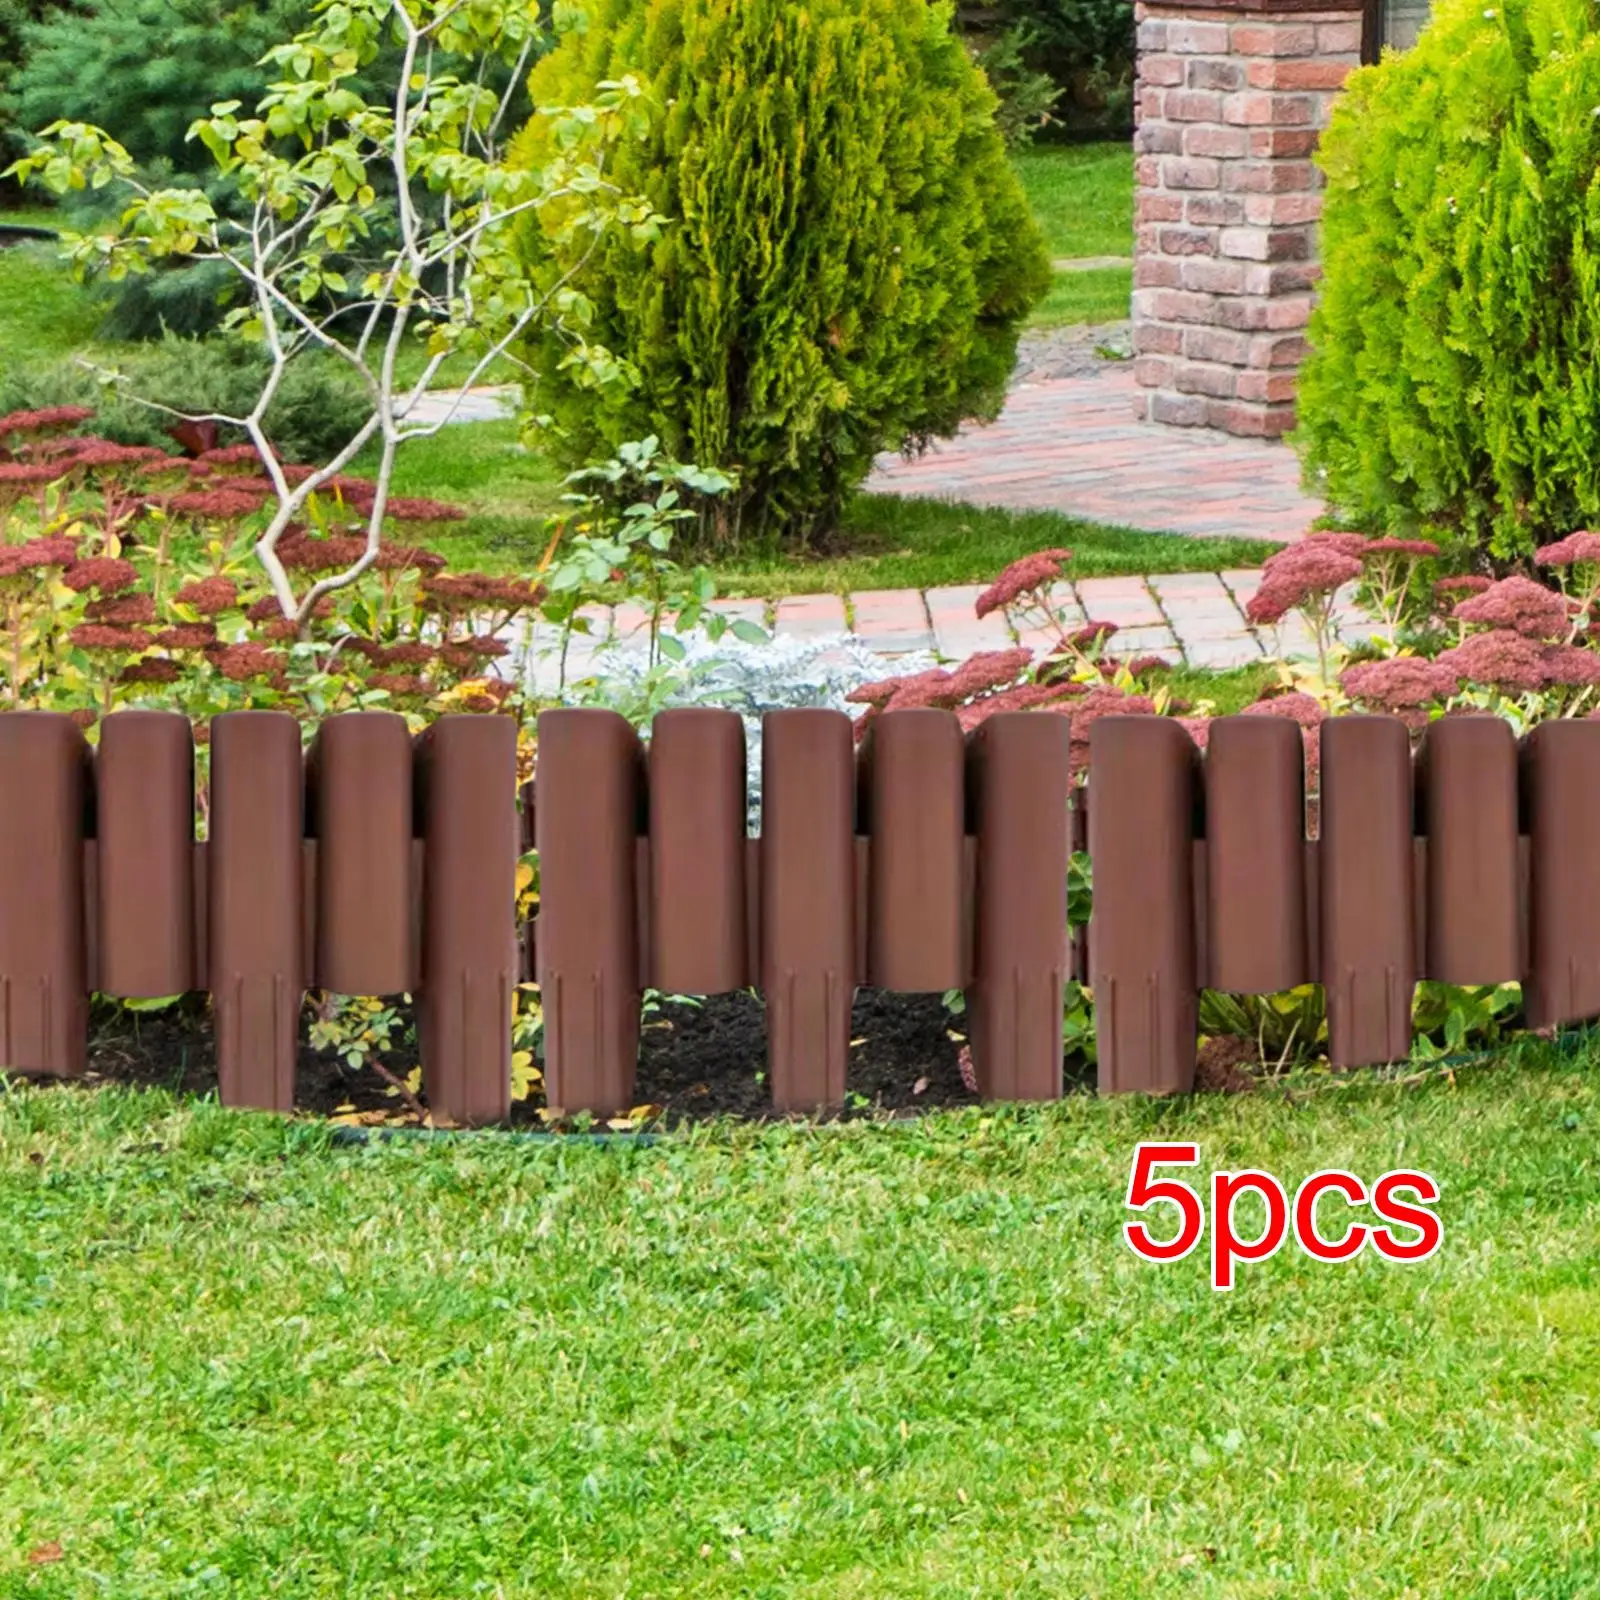 5 Pieces Garden Edging Border Reusable Decoration Detachable Garden Fencing for Path Landscaping Flower Lawn Edge Garden Patio